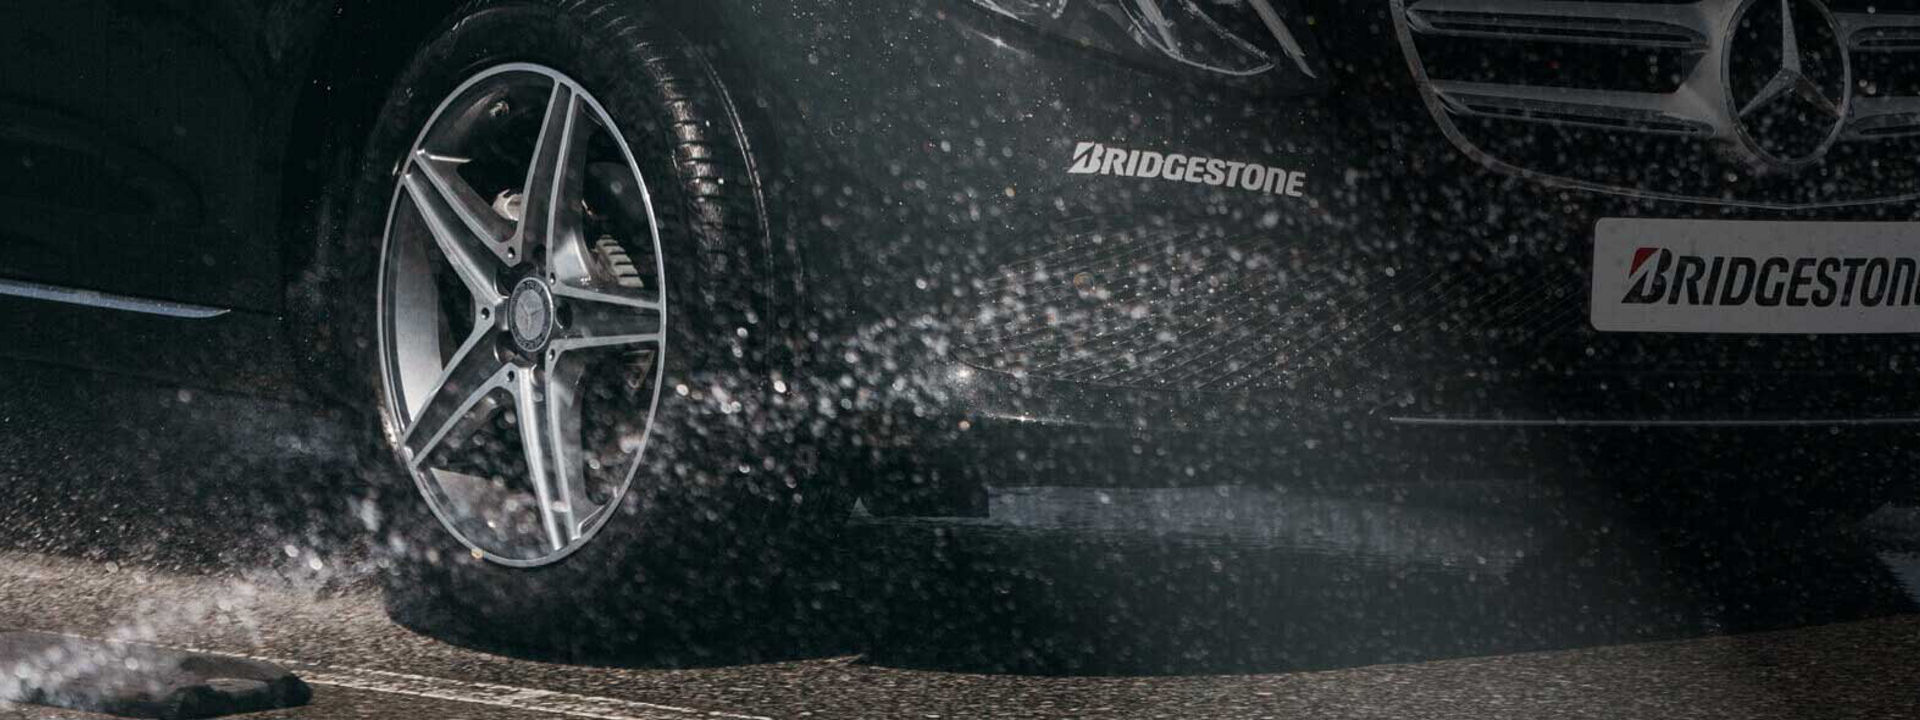 Dette billede er et nærbillede af et Bridgestone Turanza-dæk, der kører gennem våde forhold